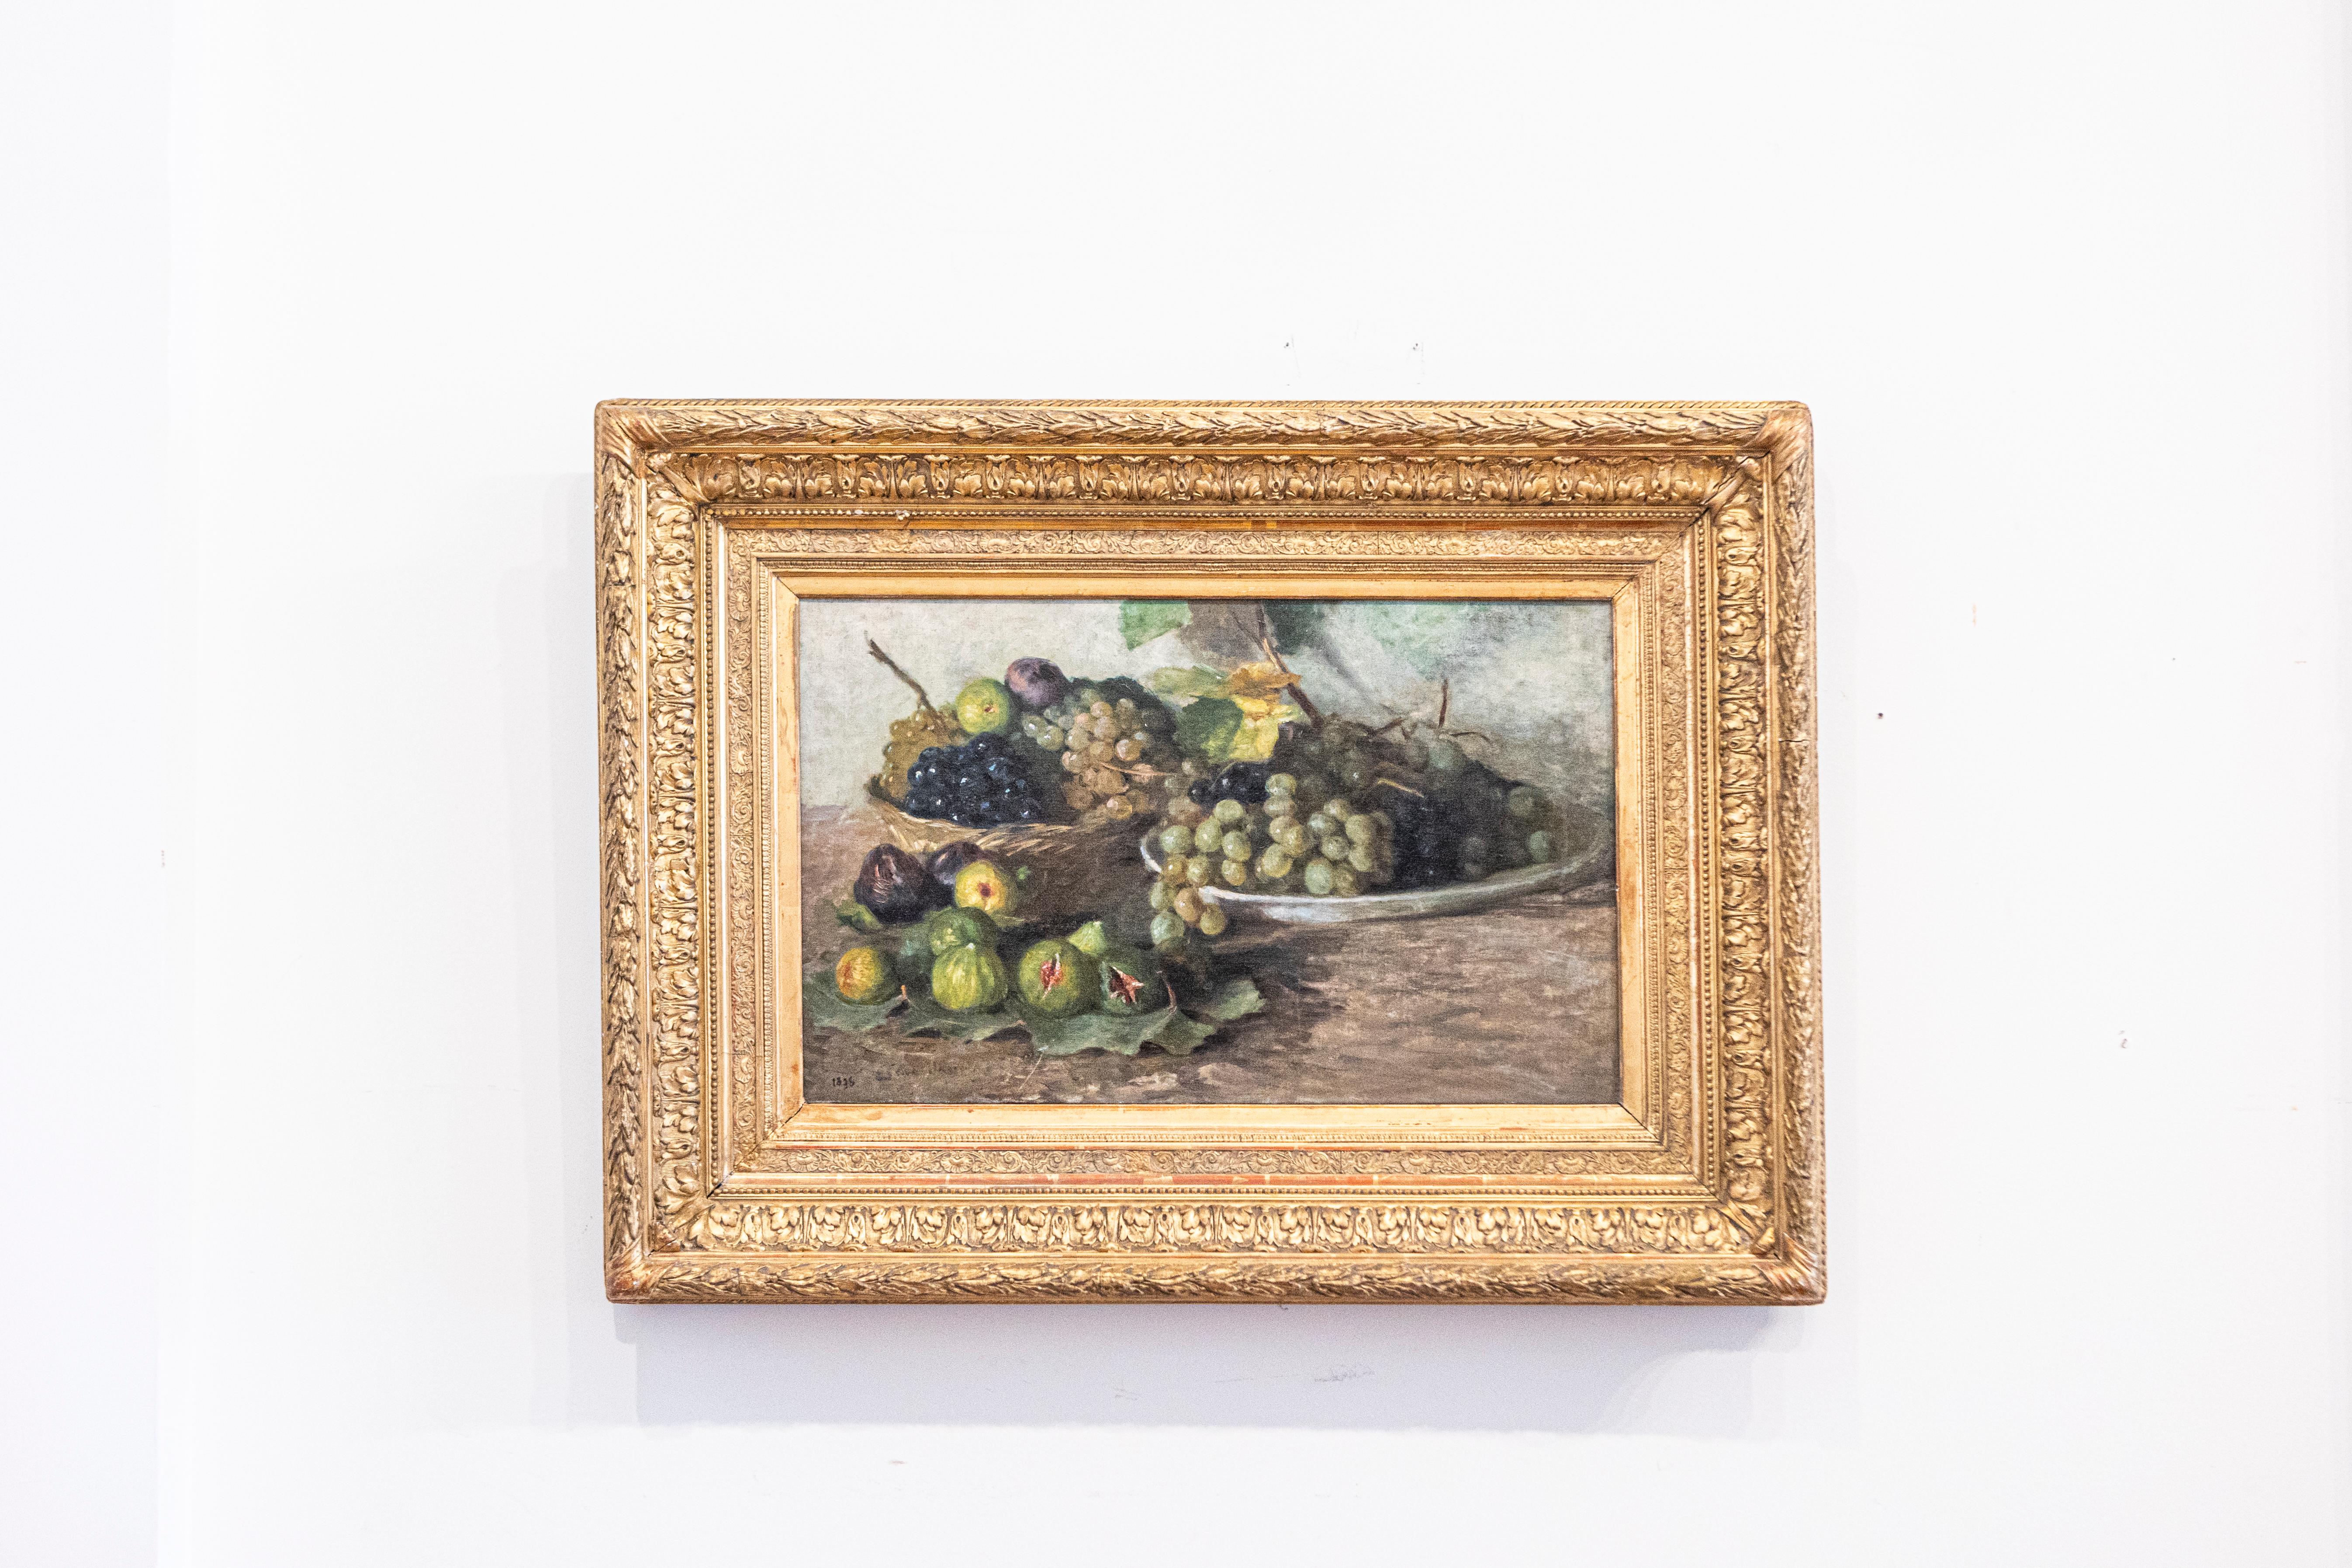 Une nature morte française encadrée à l'huile sur toile de la fin du 19e siècle représentant des fruits. Créée en France vers 1875, cette huile sur toile représente un humble arrangement de raisins et de figues appétissants, présentés dans une